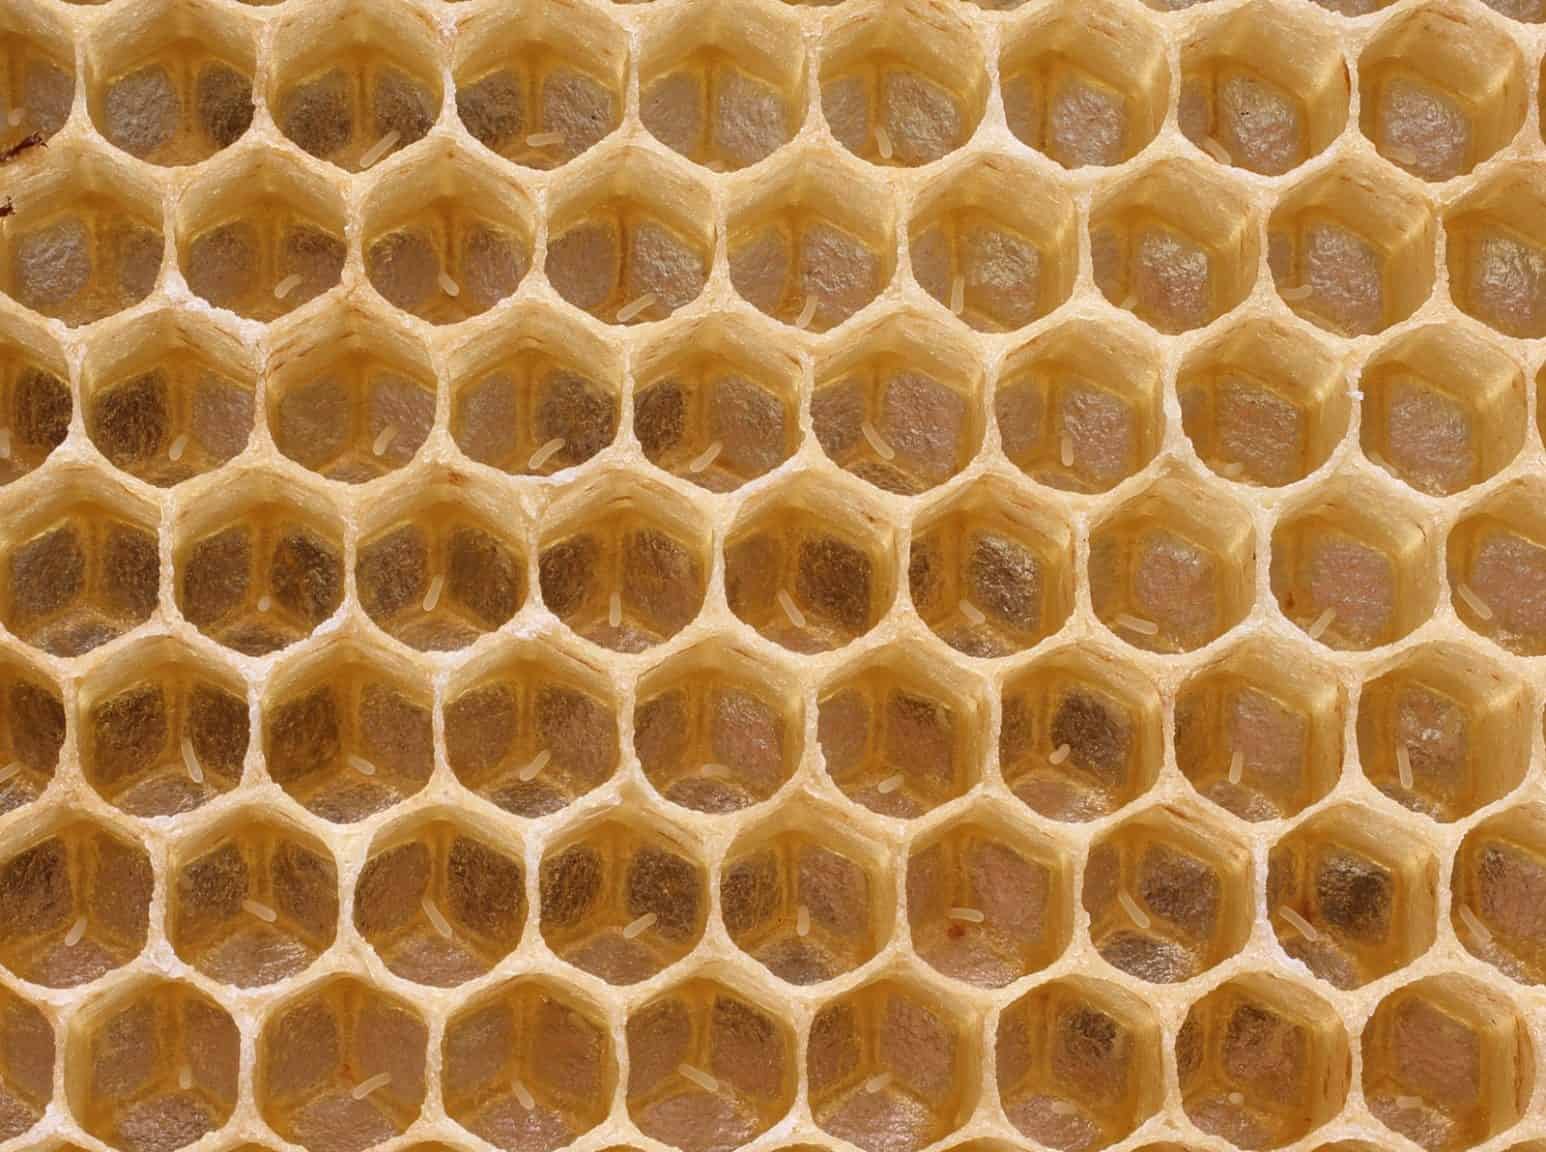 Honey bee eggs